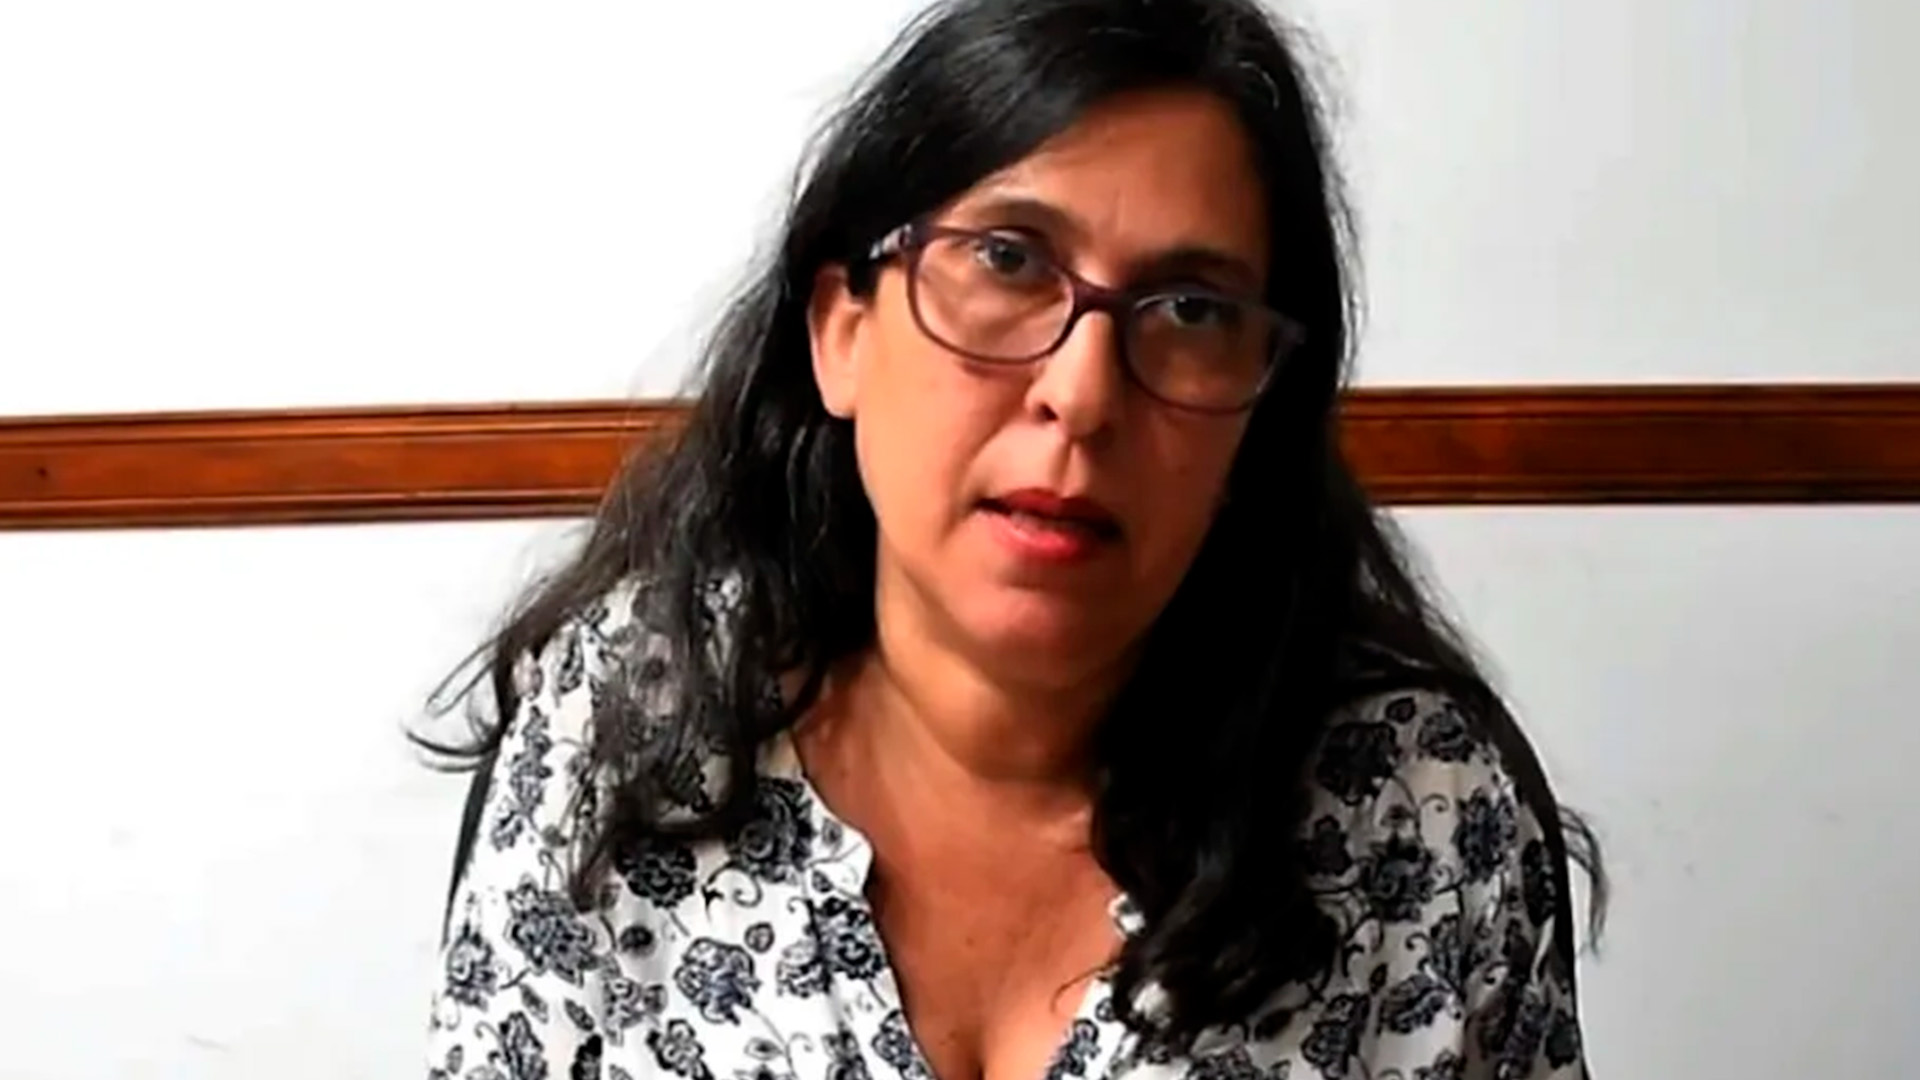 La jueza María Eugenia Maiztegui se tomó licencia por un pico de stress causado por las presiones políticas y sindicales